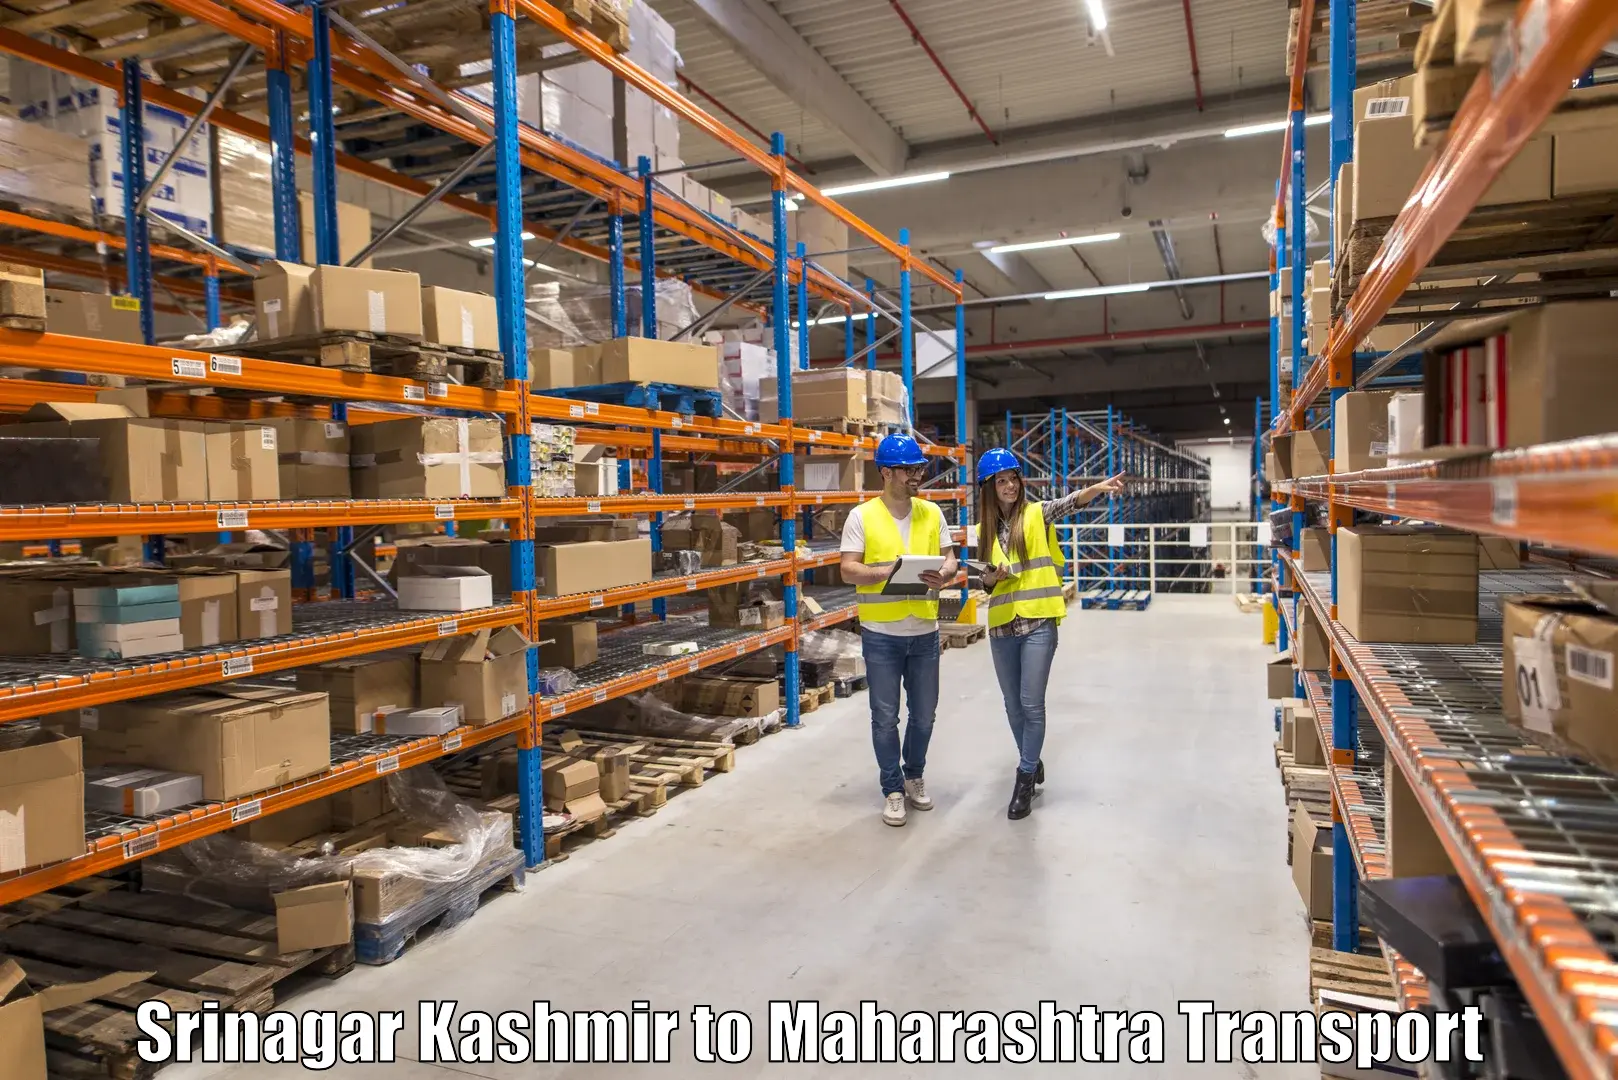 Commercial transport service Srinagar Kashmir to Sangameshwar